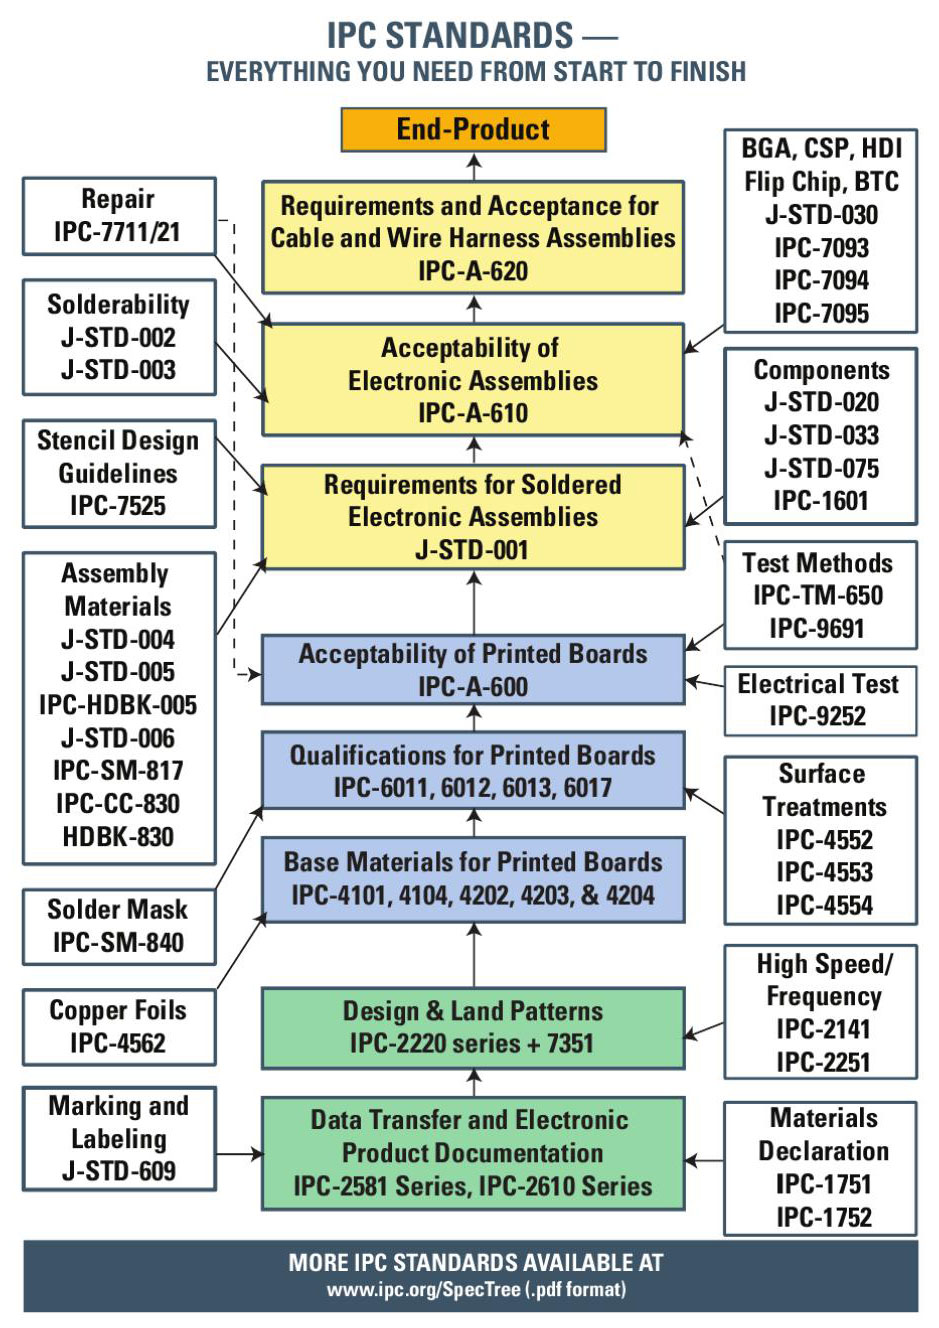 IPC Standard Tree